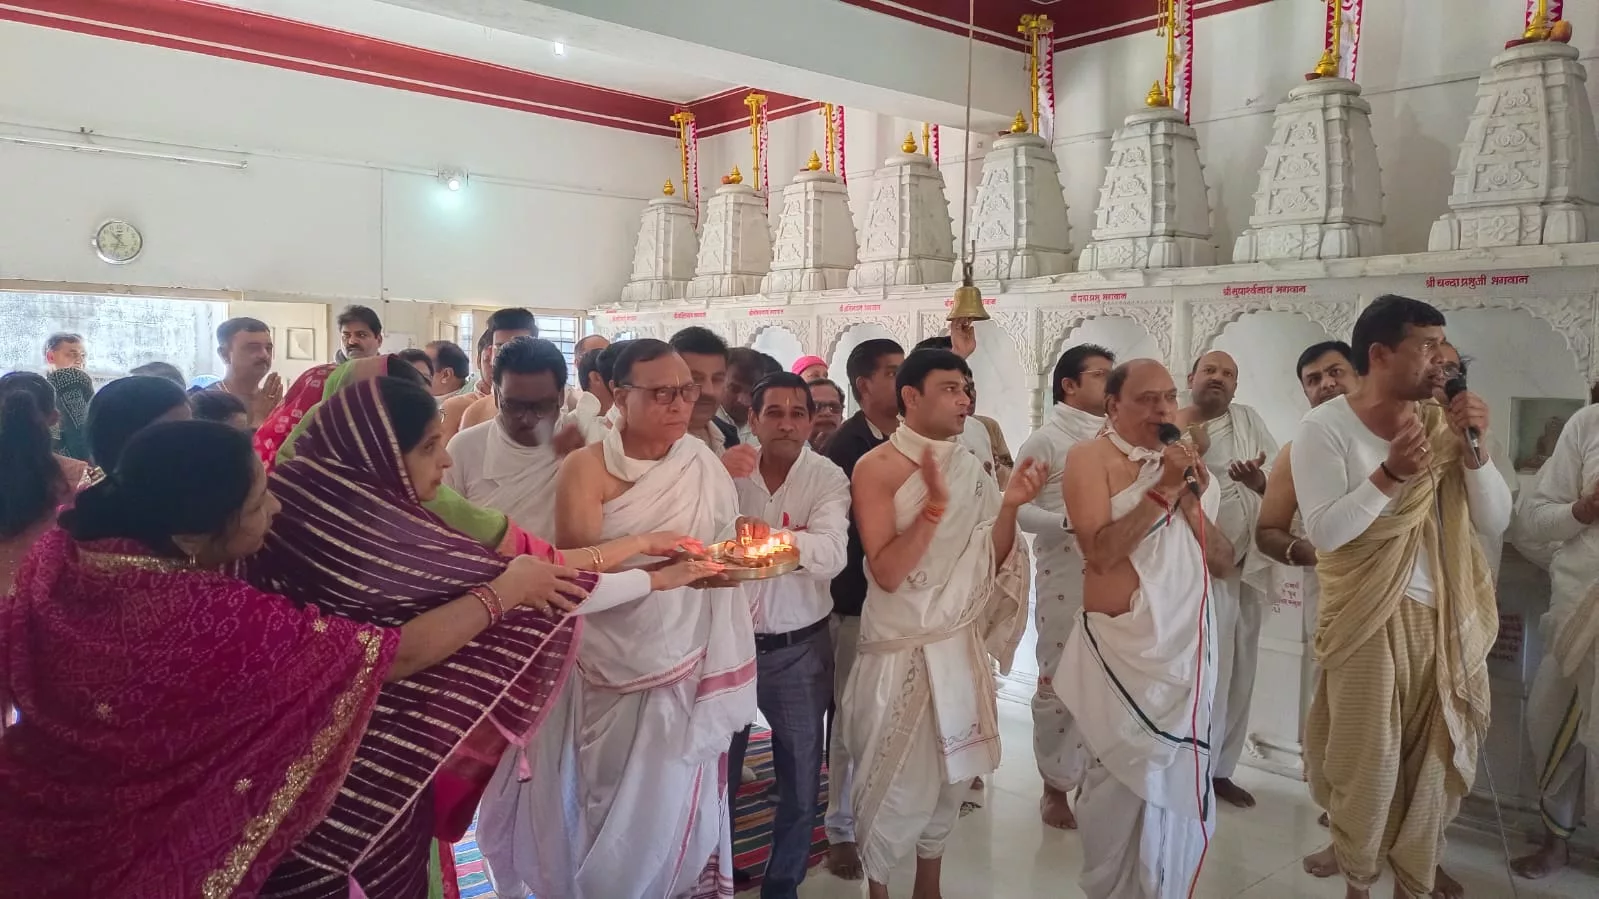 गणधर मंदिर एवं चौबीस तीर्थंकर शिखर पर ध्वजारोहण का किया गया आयोजन | New India Times